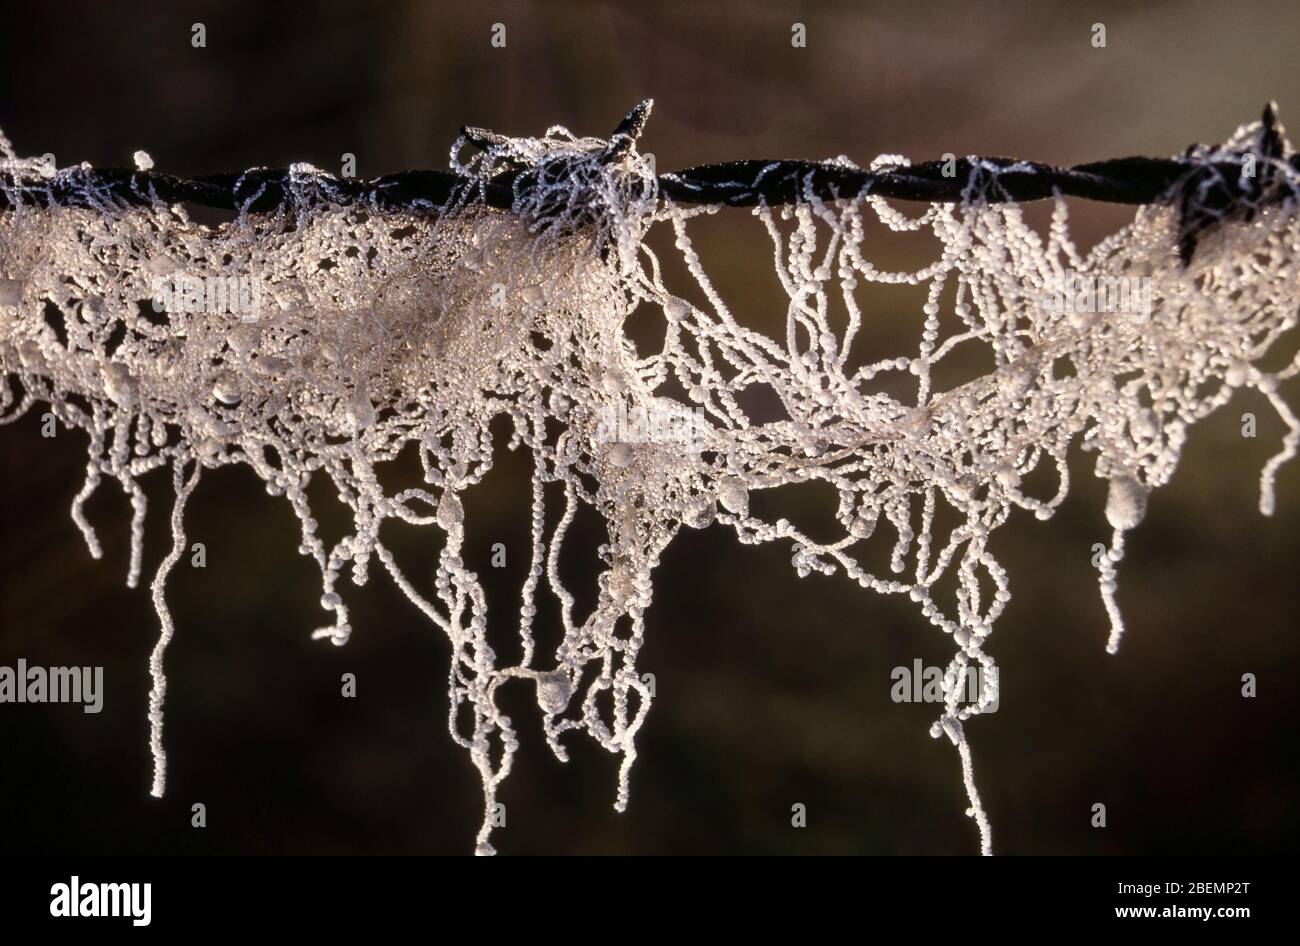 Cierre de hermosas gotas de agua congeladas en hebras de lana de oveja en una valla de alambre de púas en invierno Foto de stock